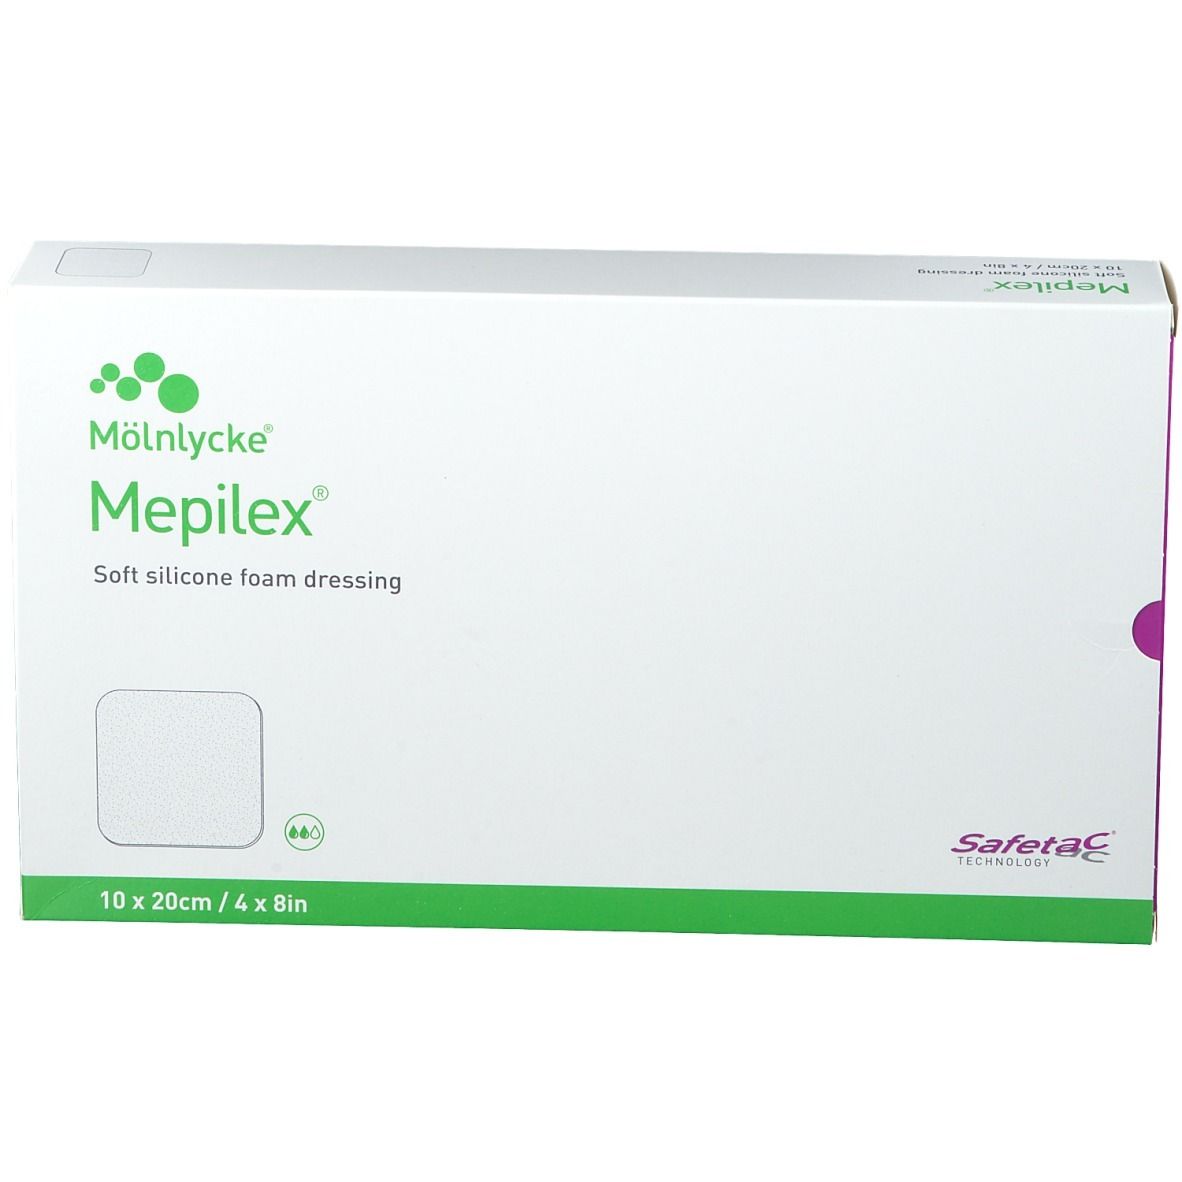 Mepilex 10 cm x 20 cm